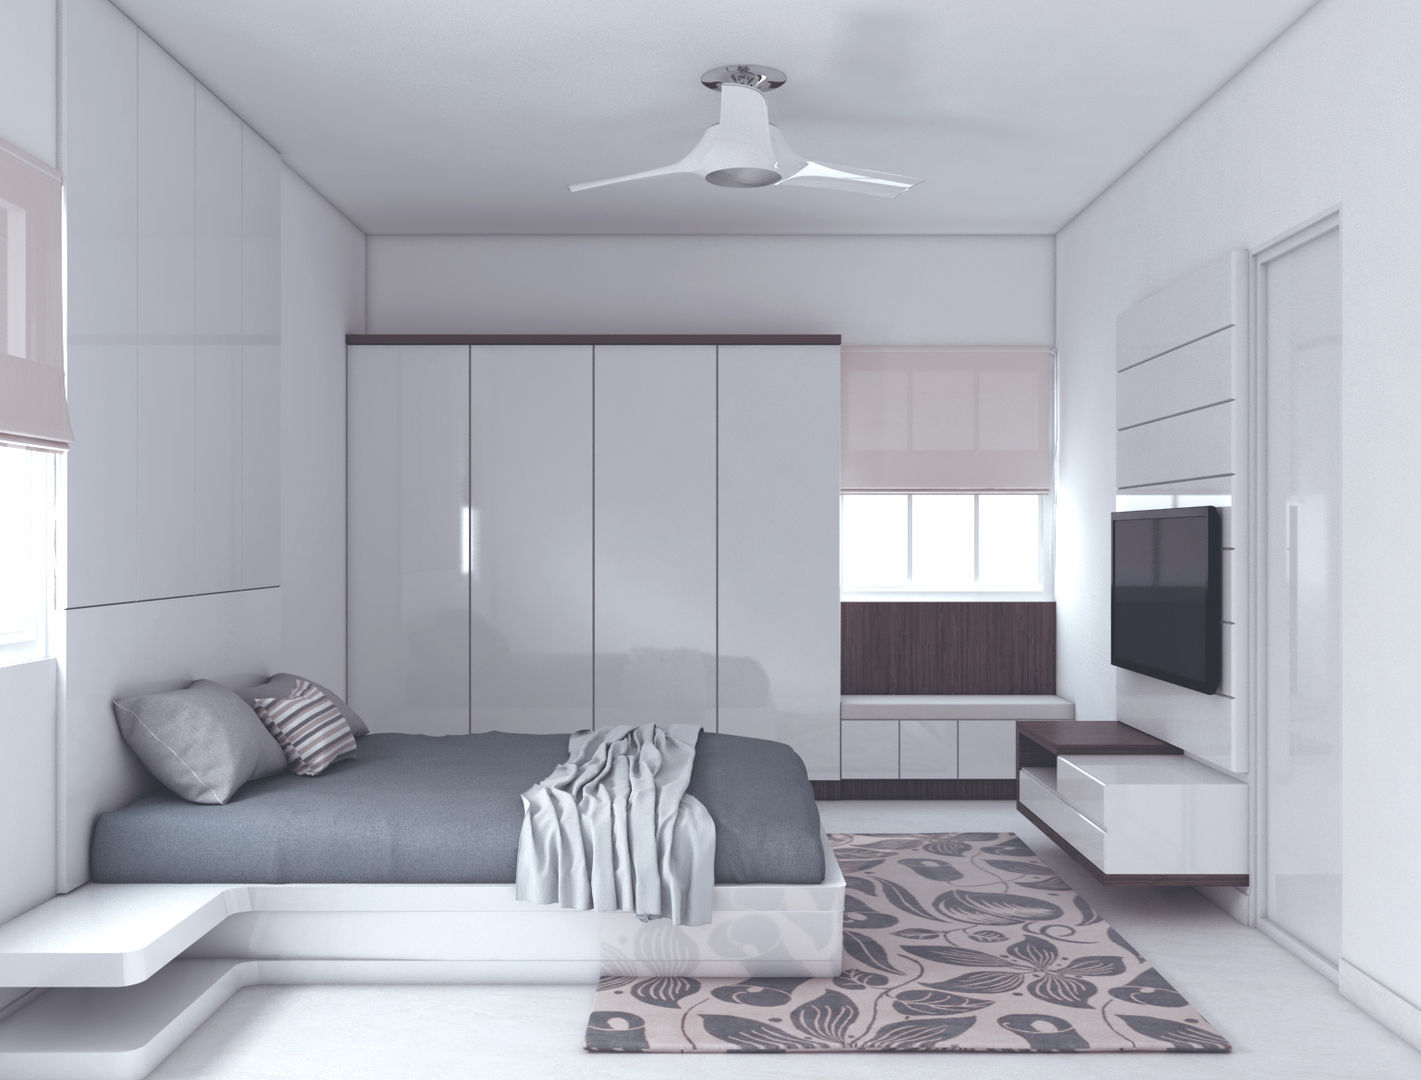 Minimalistic interiors for residence, Rhythm And Emphasis Design Studio Rhythm And Emphasis Design Studio Phòng ngủ phong cách hiện đại